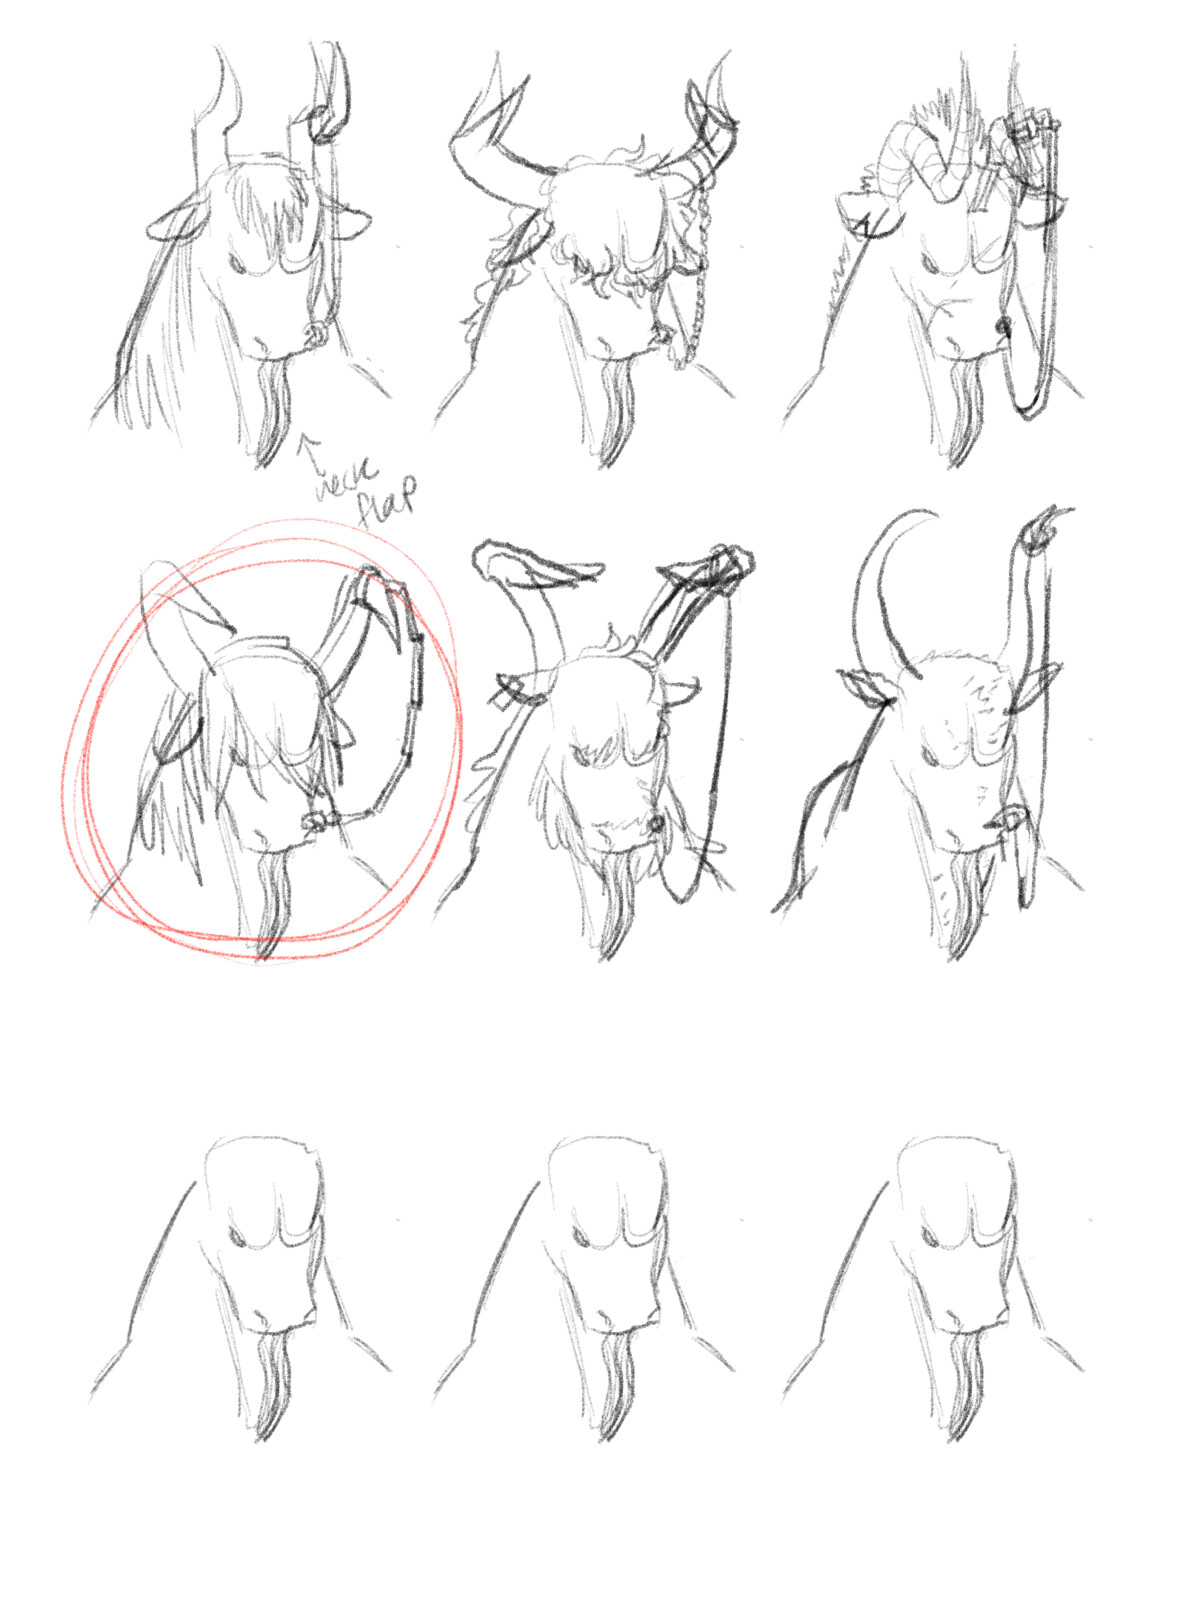 head sketches